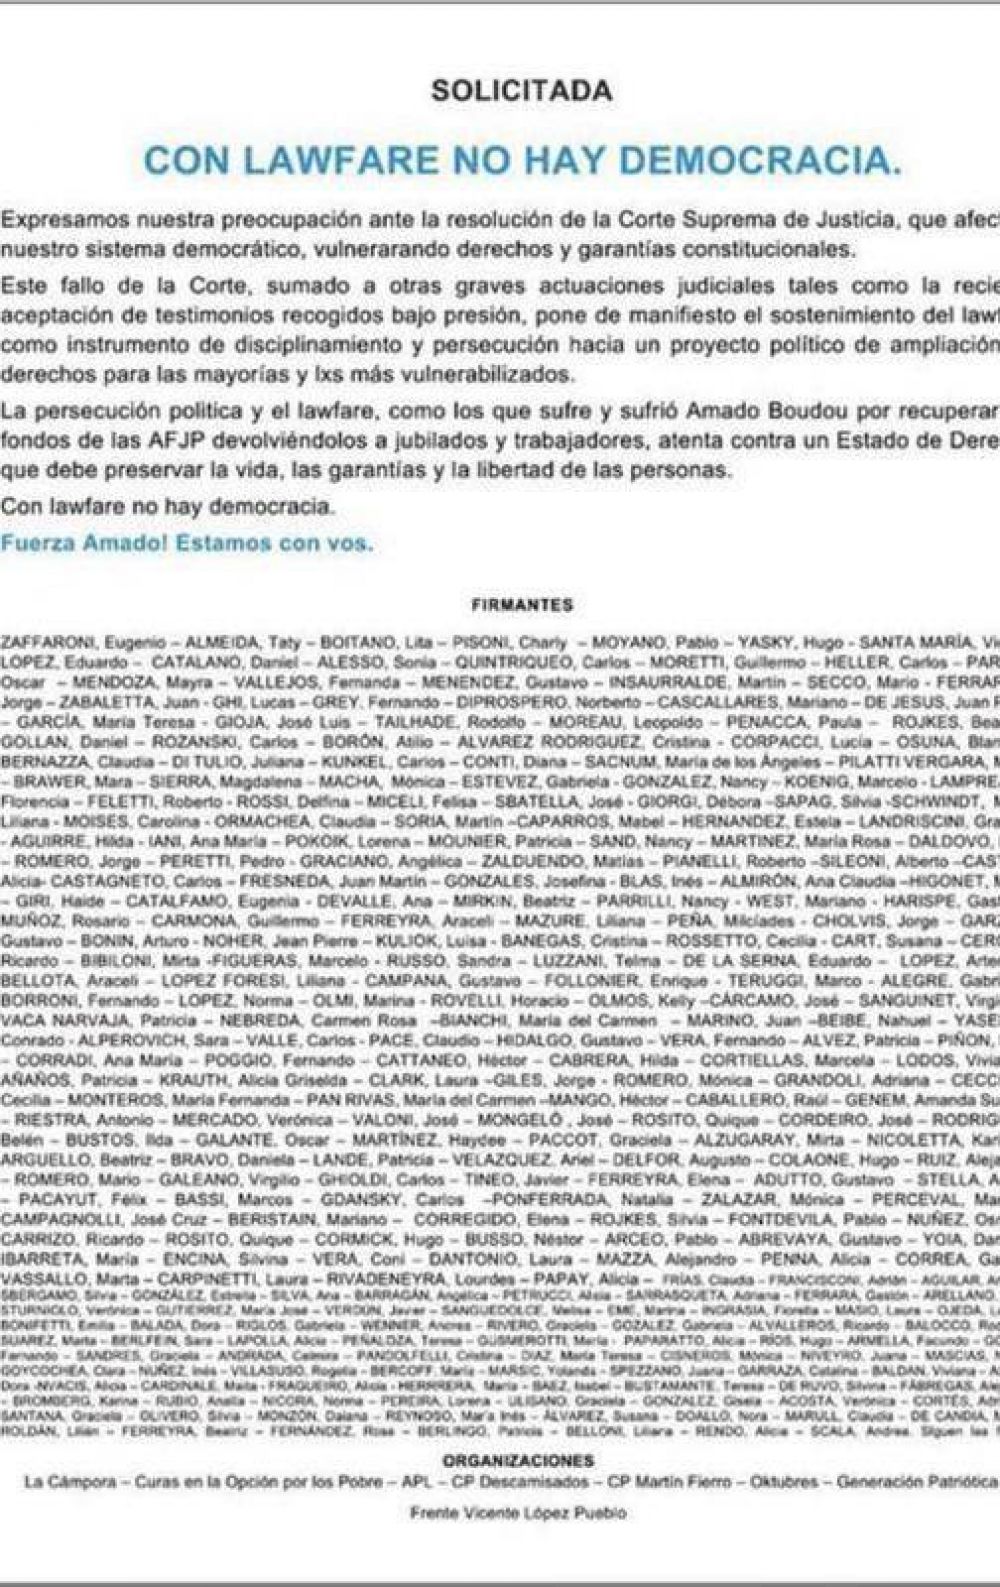 Quines son los intendentes bonaerenses que firmaron la solicitada del kirchnerismo en apoyo a Boudou